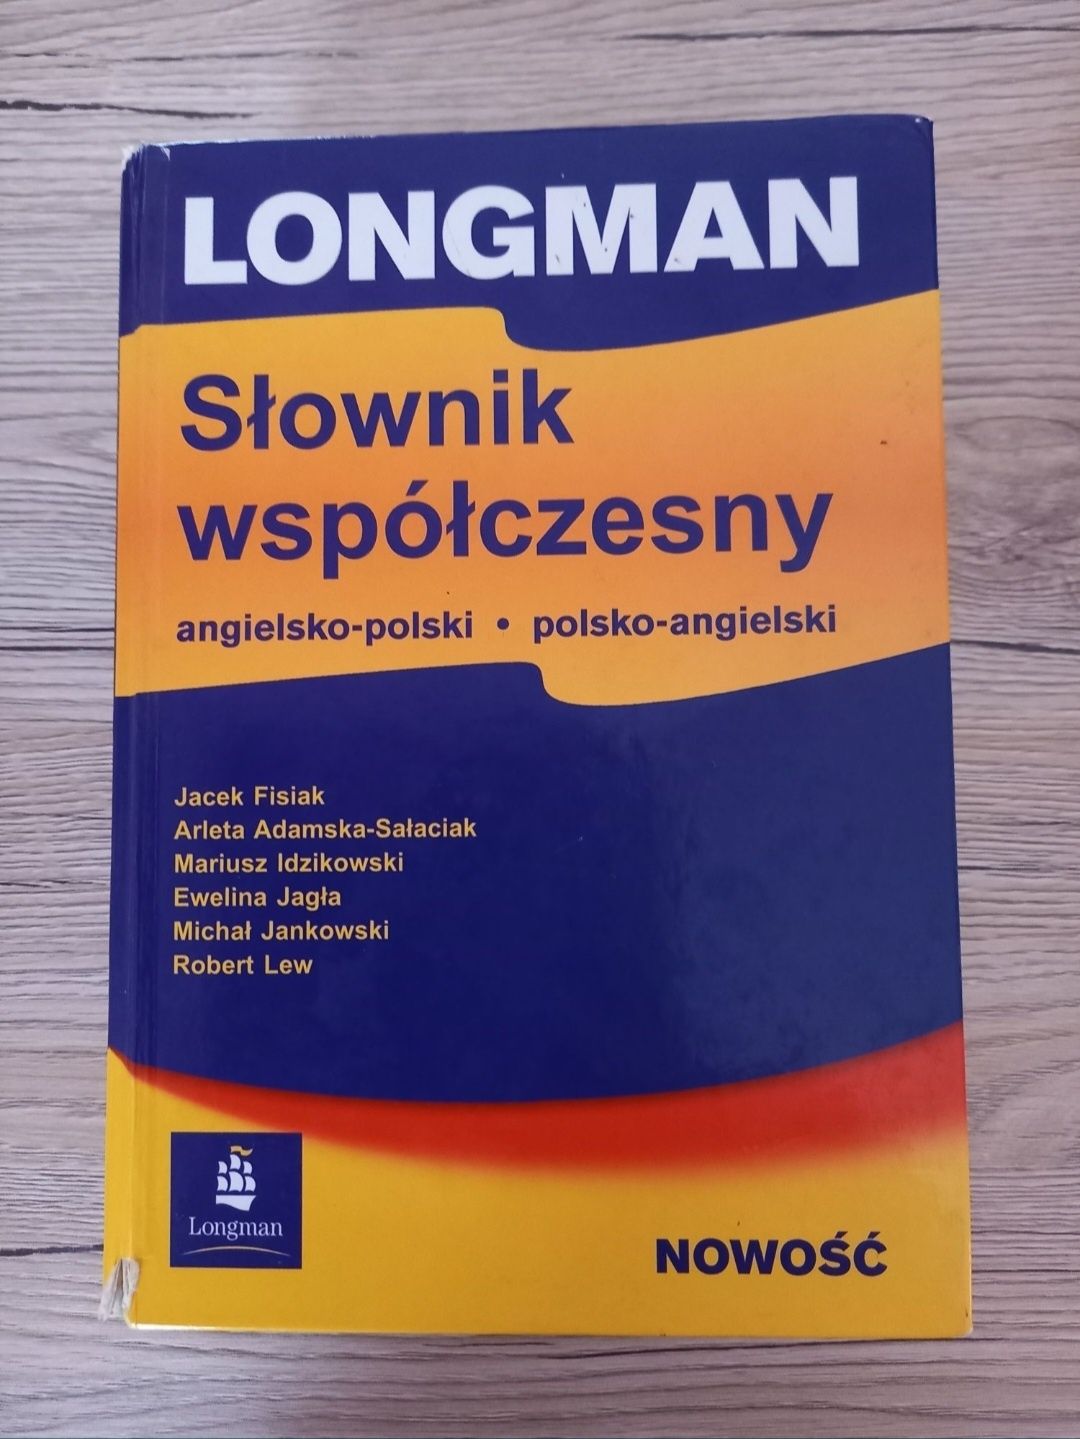 Słownik Longman angielsko-polski i polsko angielski